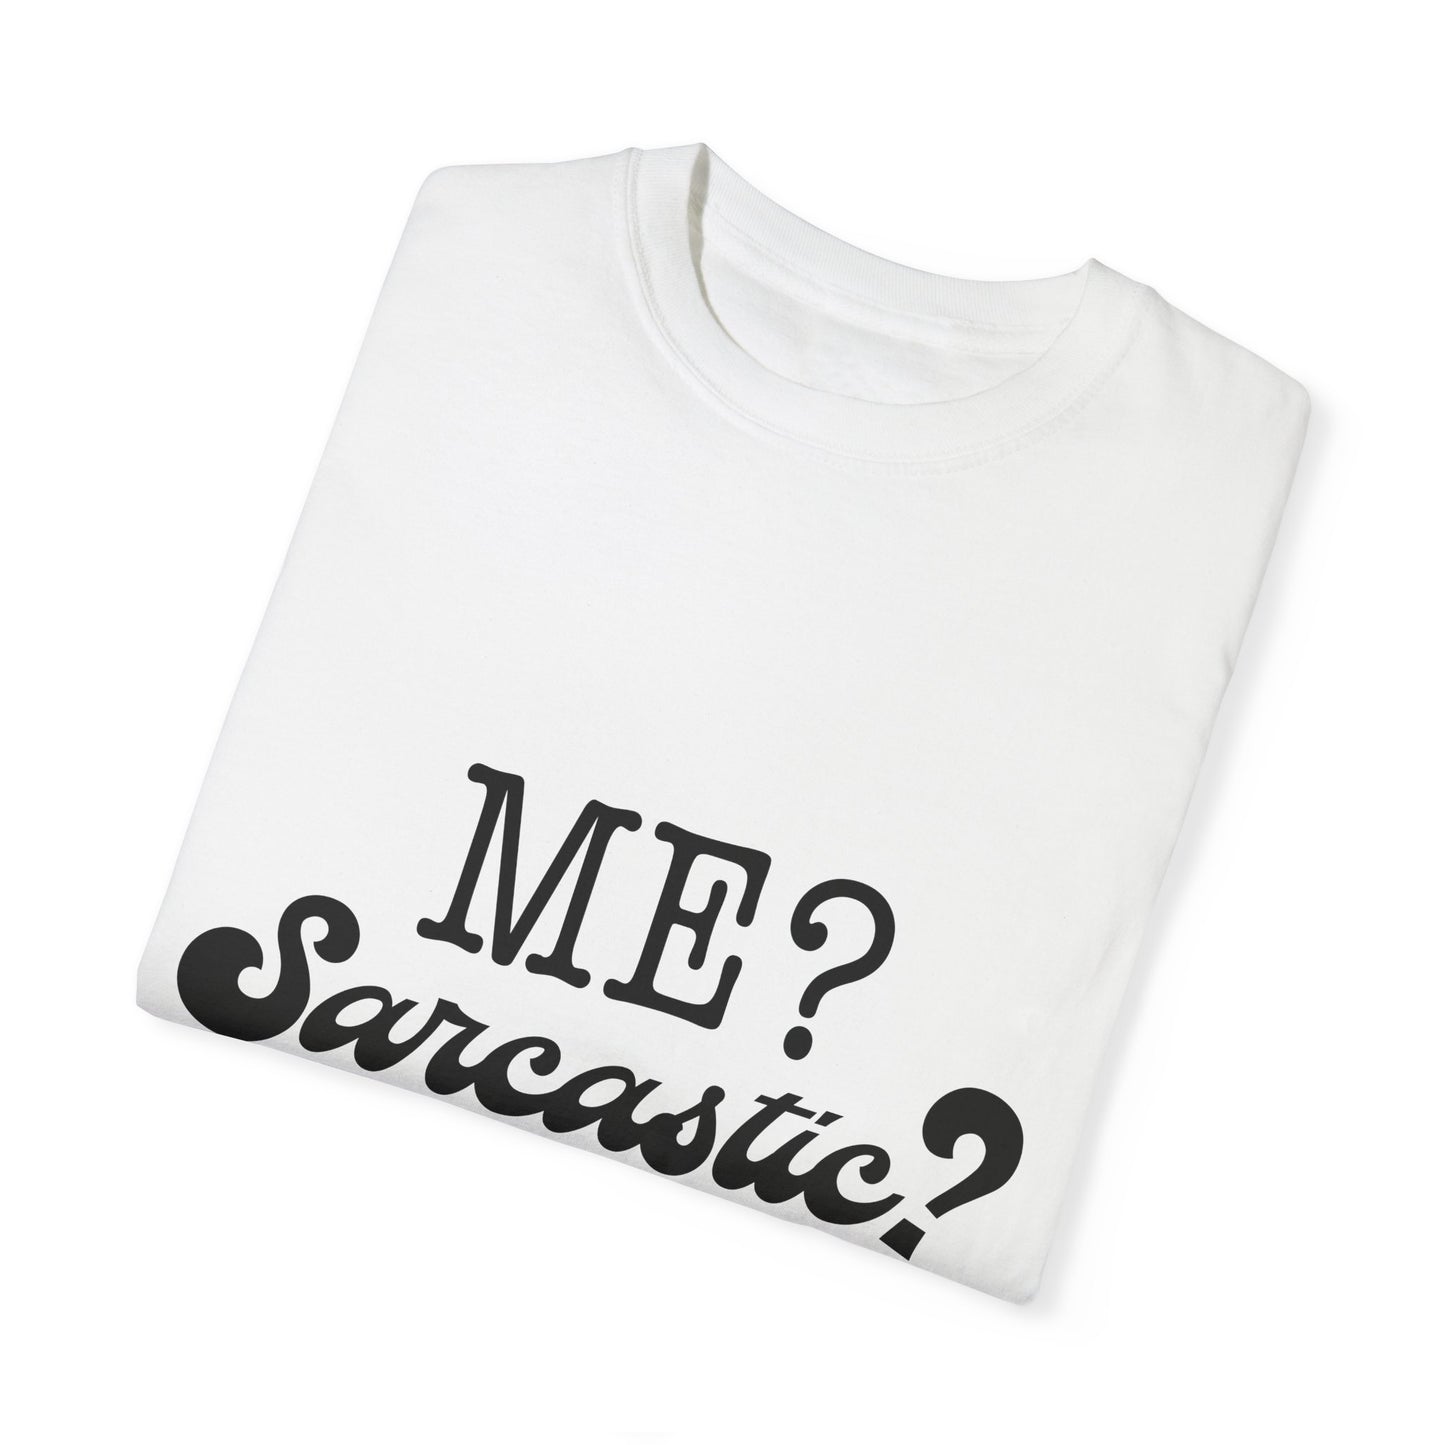 Me? Sarcastic? Nah.. - Unisex Garment-Dyed T-shirt